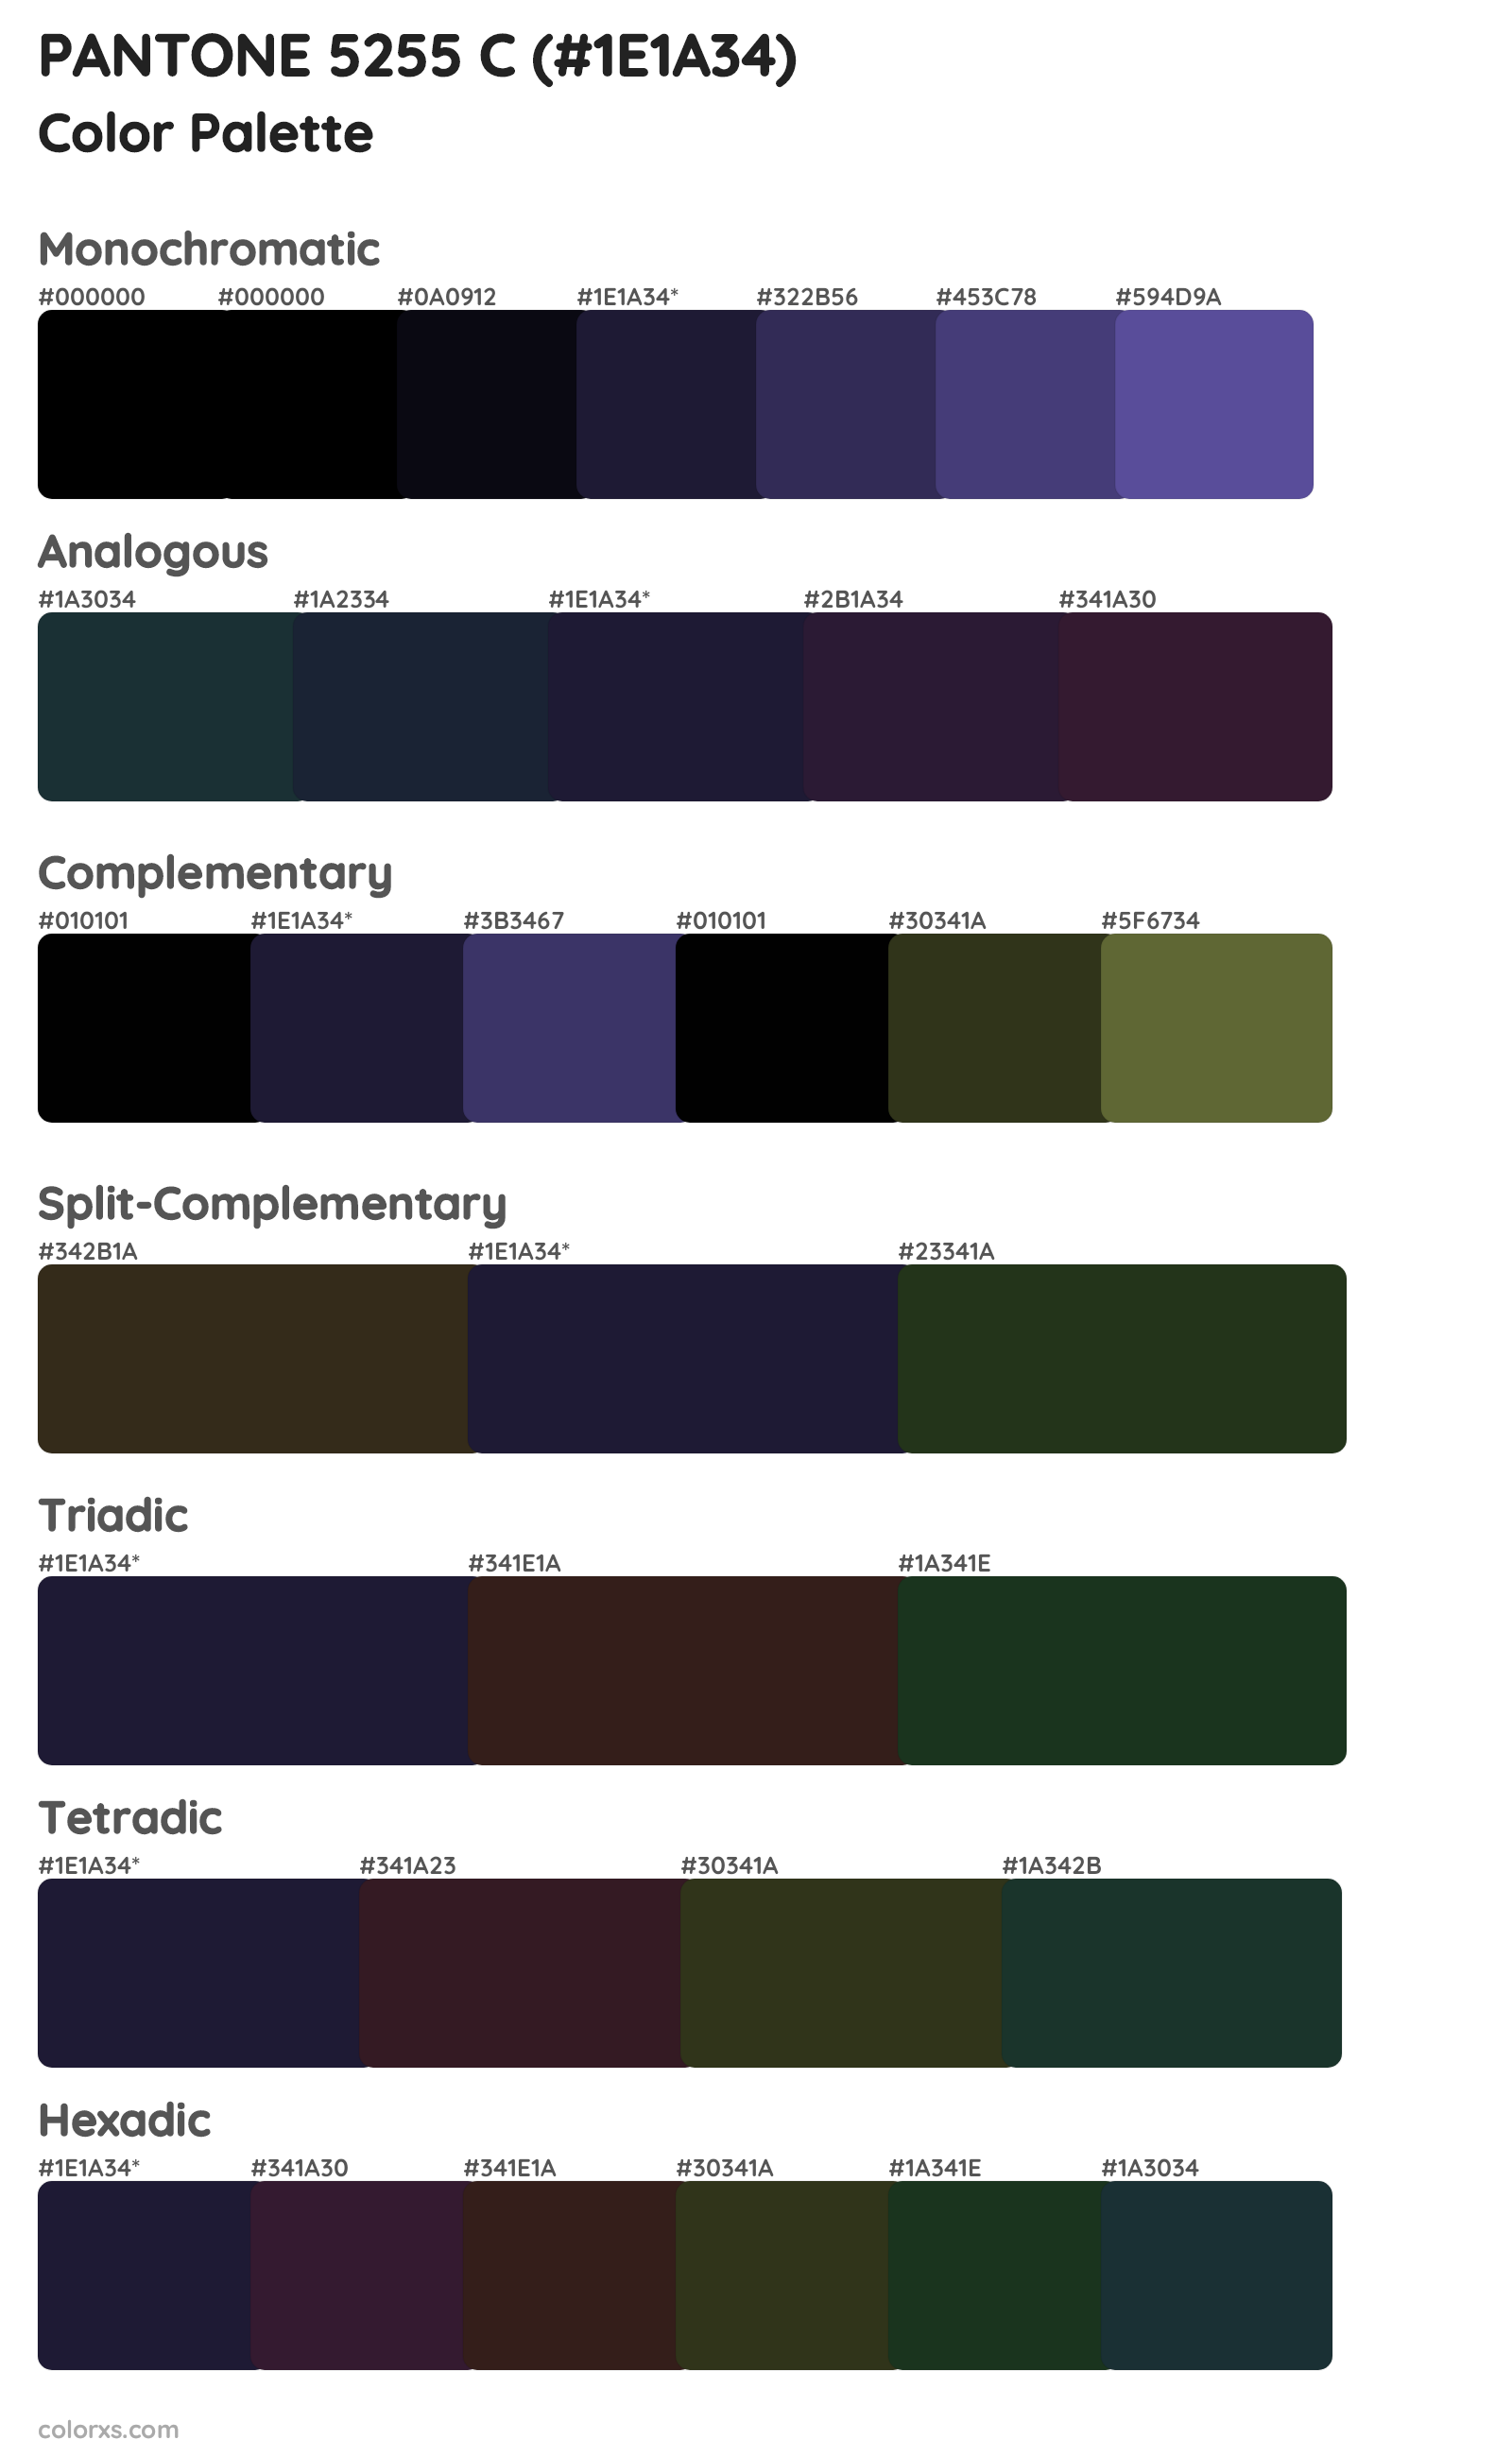 PANTONE 5255 C Color Scheme Palettes